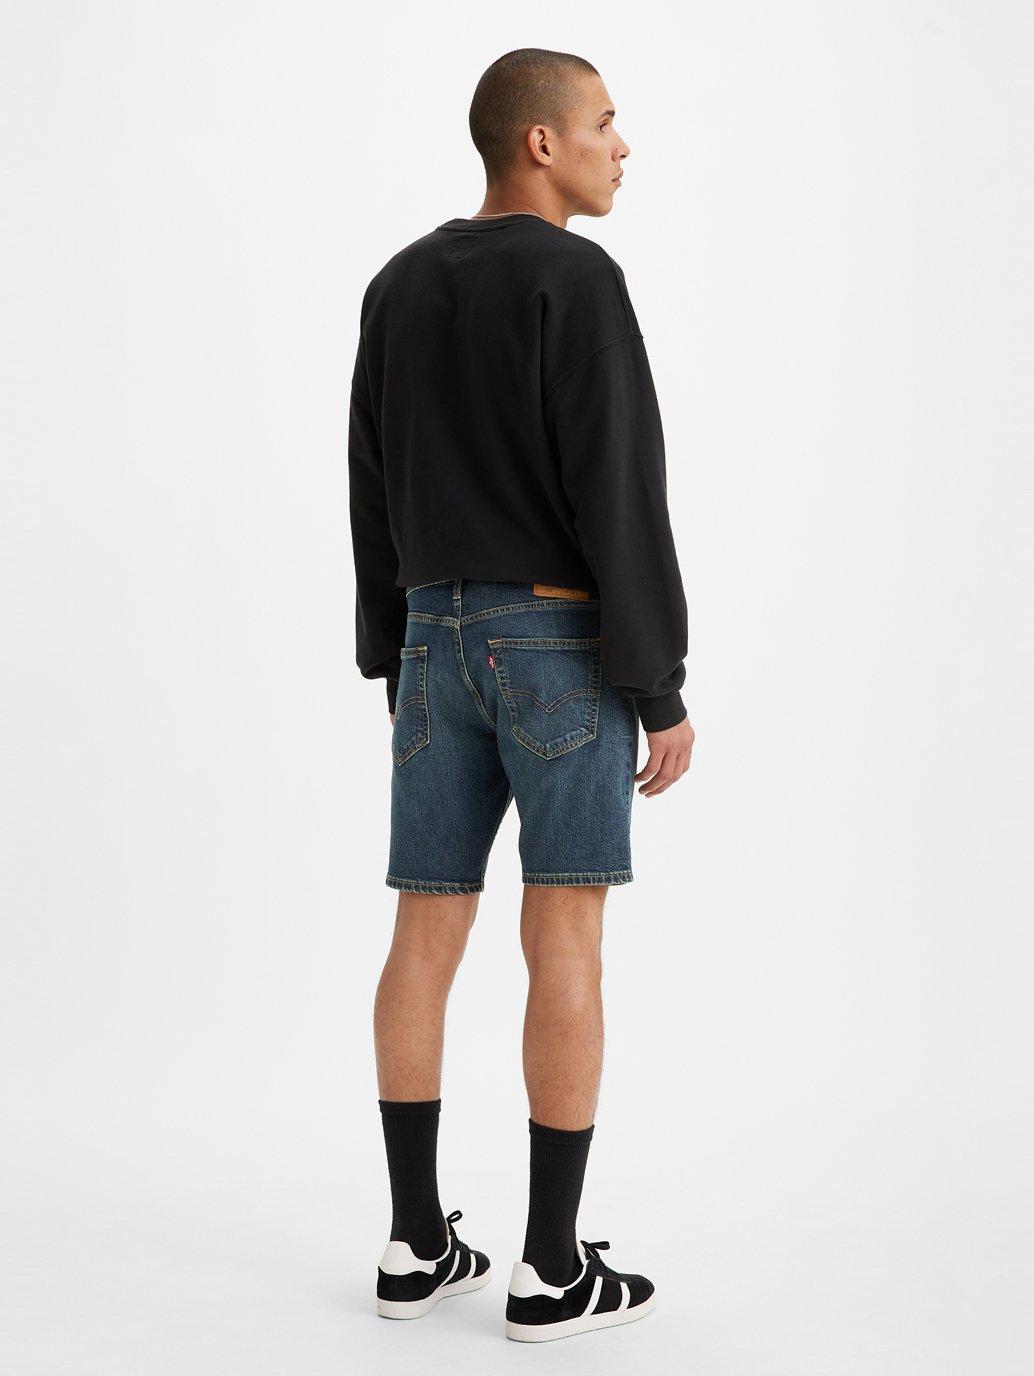 Buy Levi's® Men's 412 Slim Shorts | Levi's® Official Online Store SG